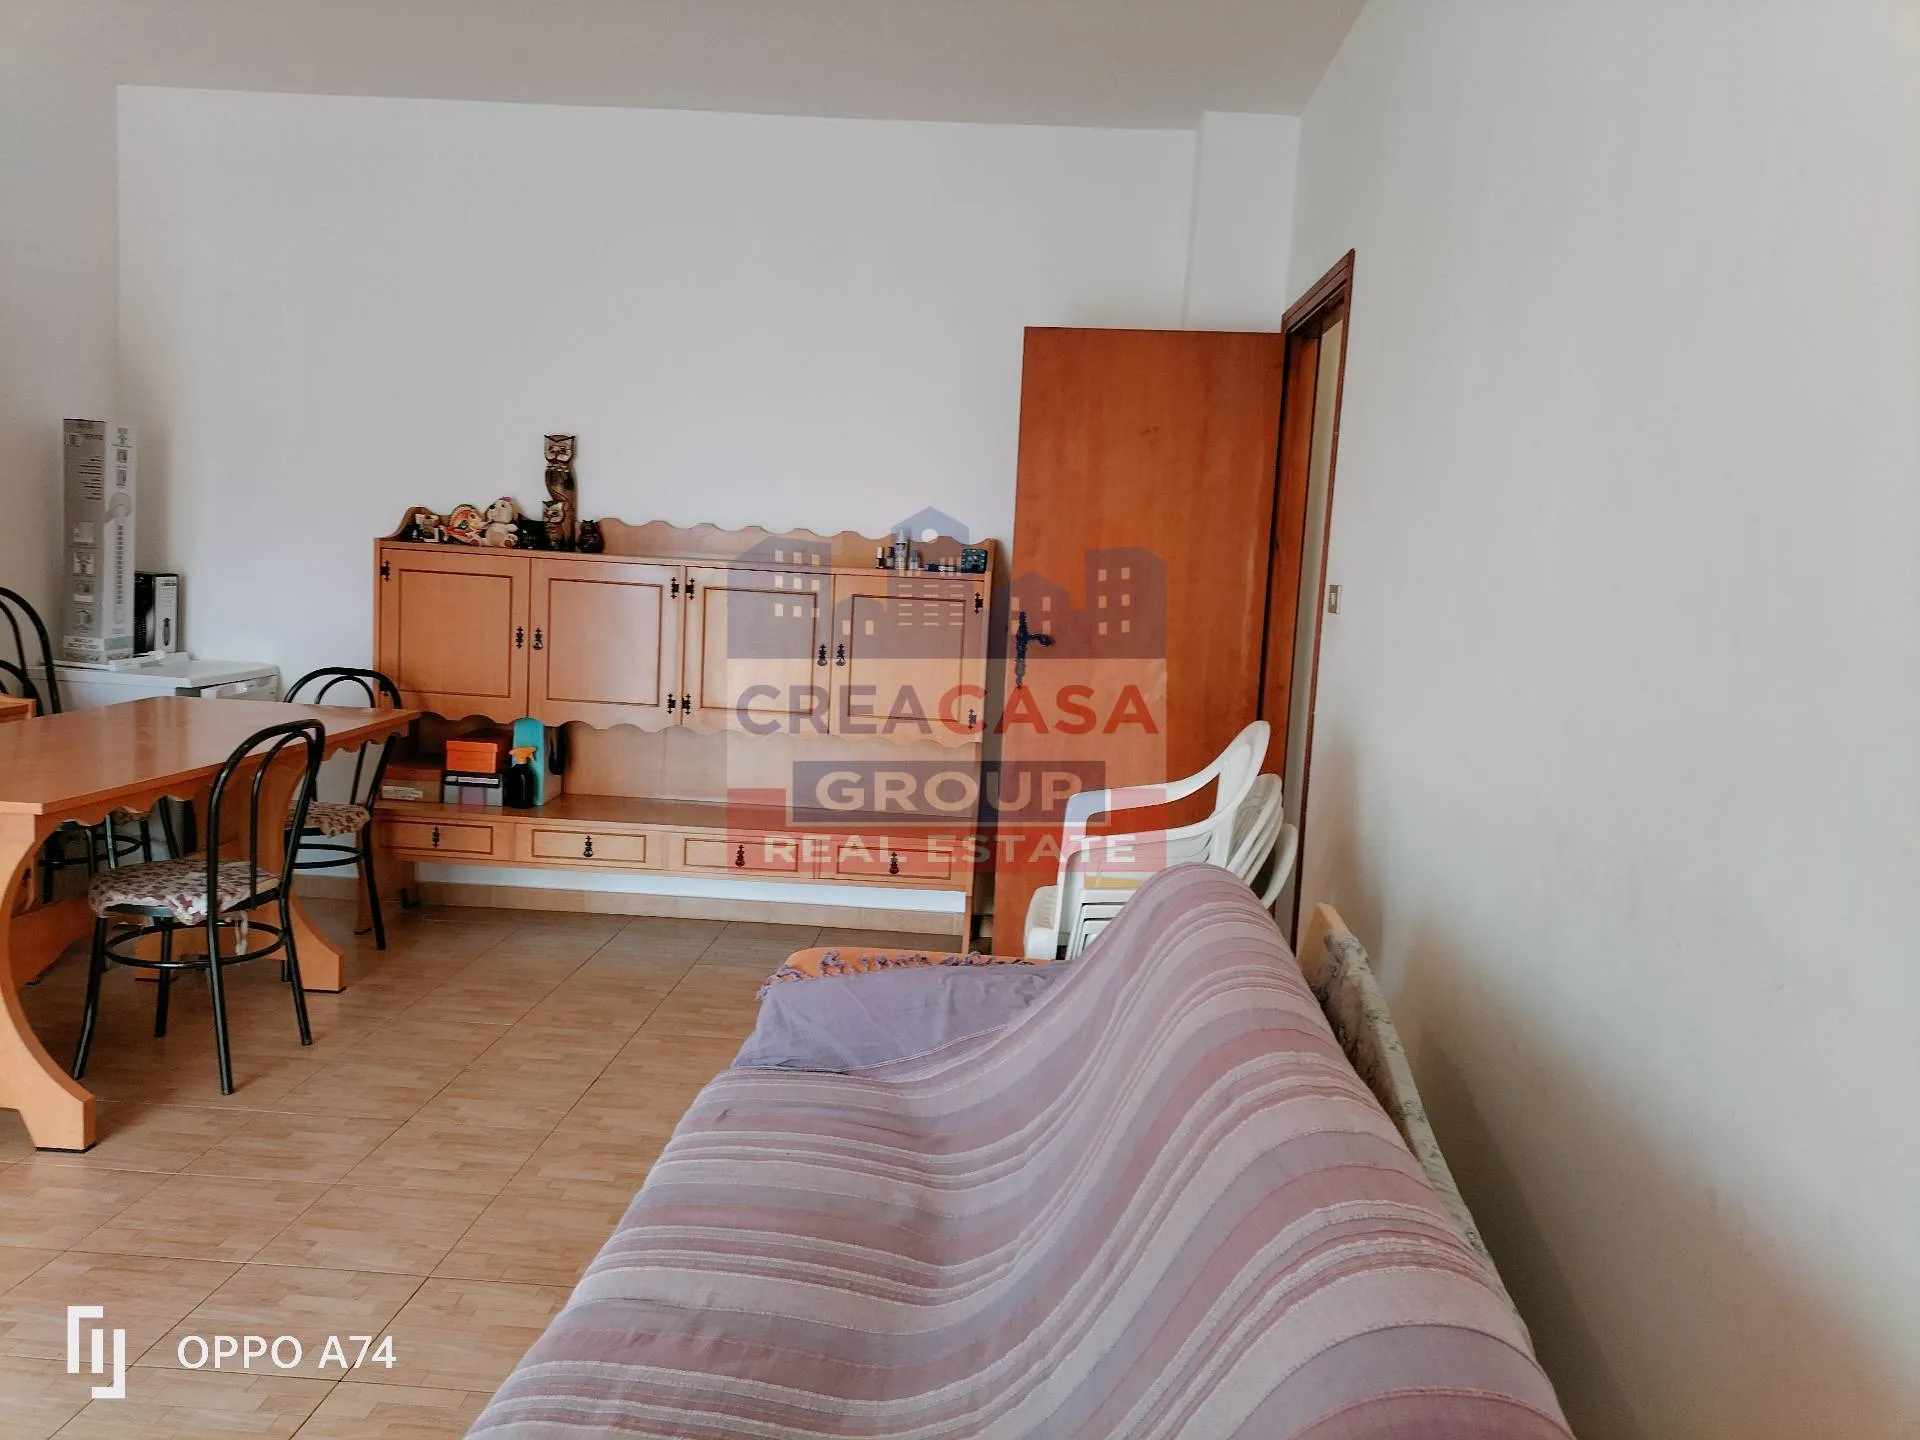 Immagine per Appartamento in vendita a Giardini-Naxos via teocle